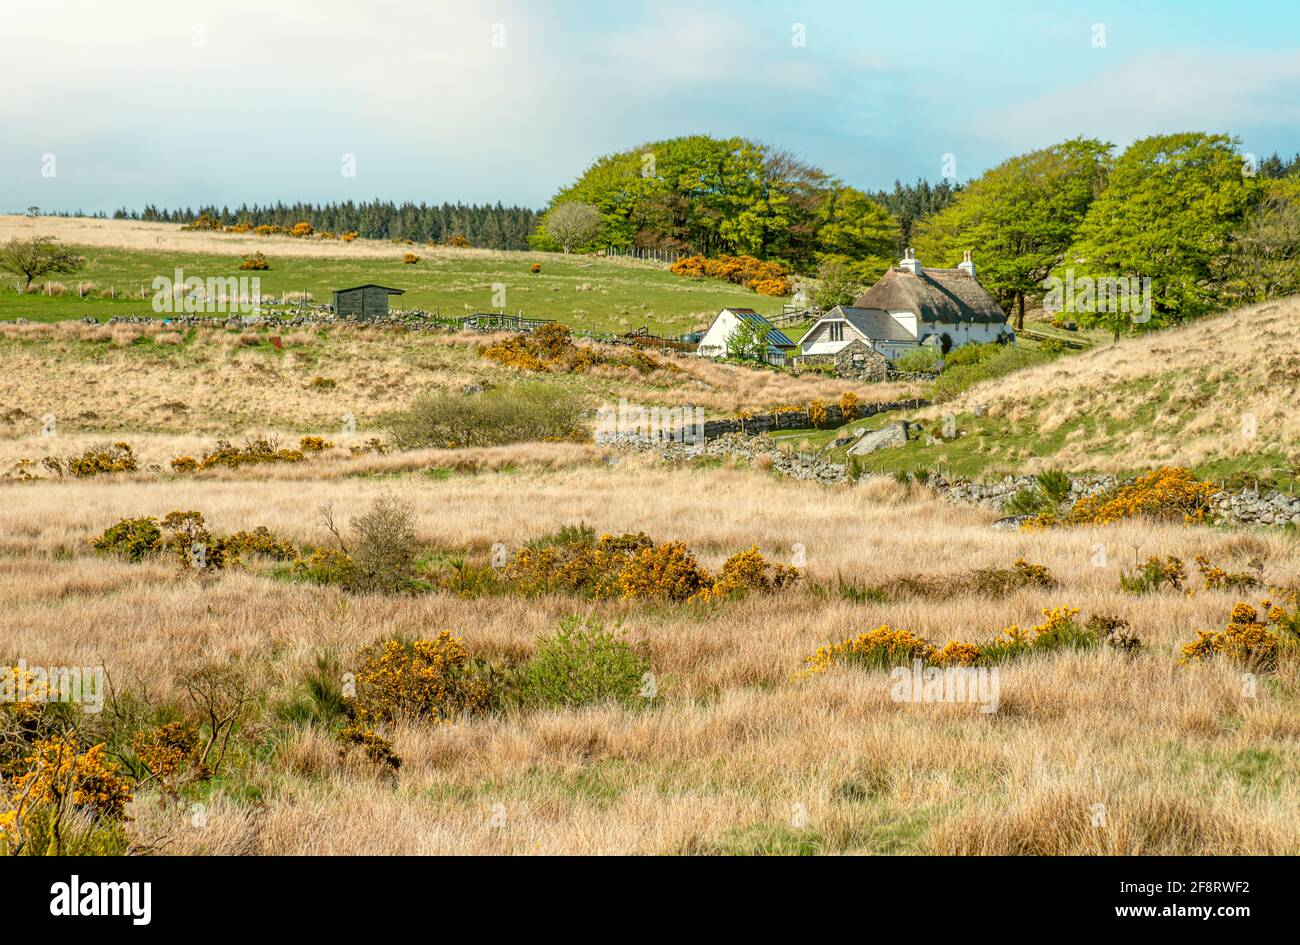 Ferme isolée au parc national de Dartmoor, Devon, Angleterre, Royaume-Uni Banque D'Images